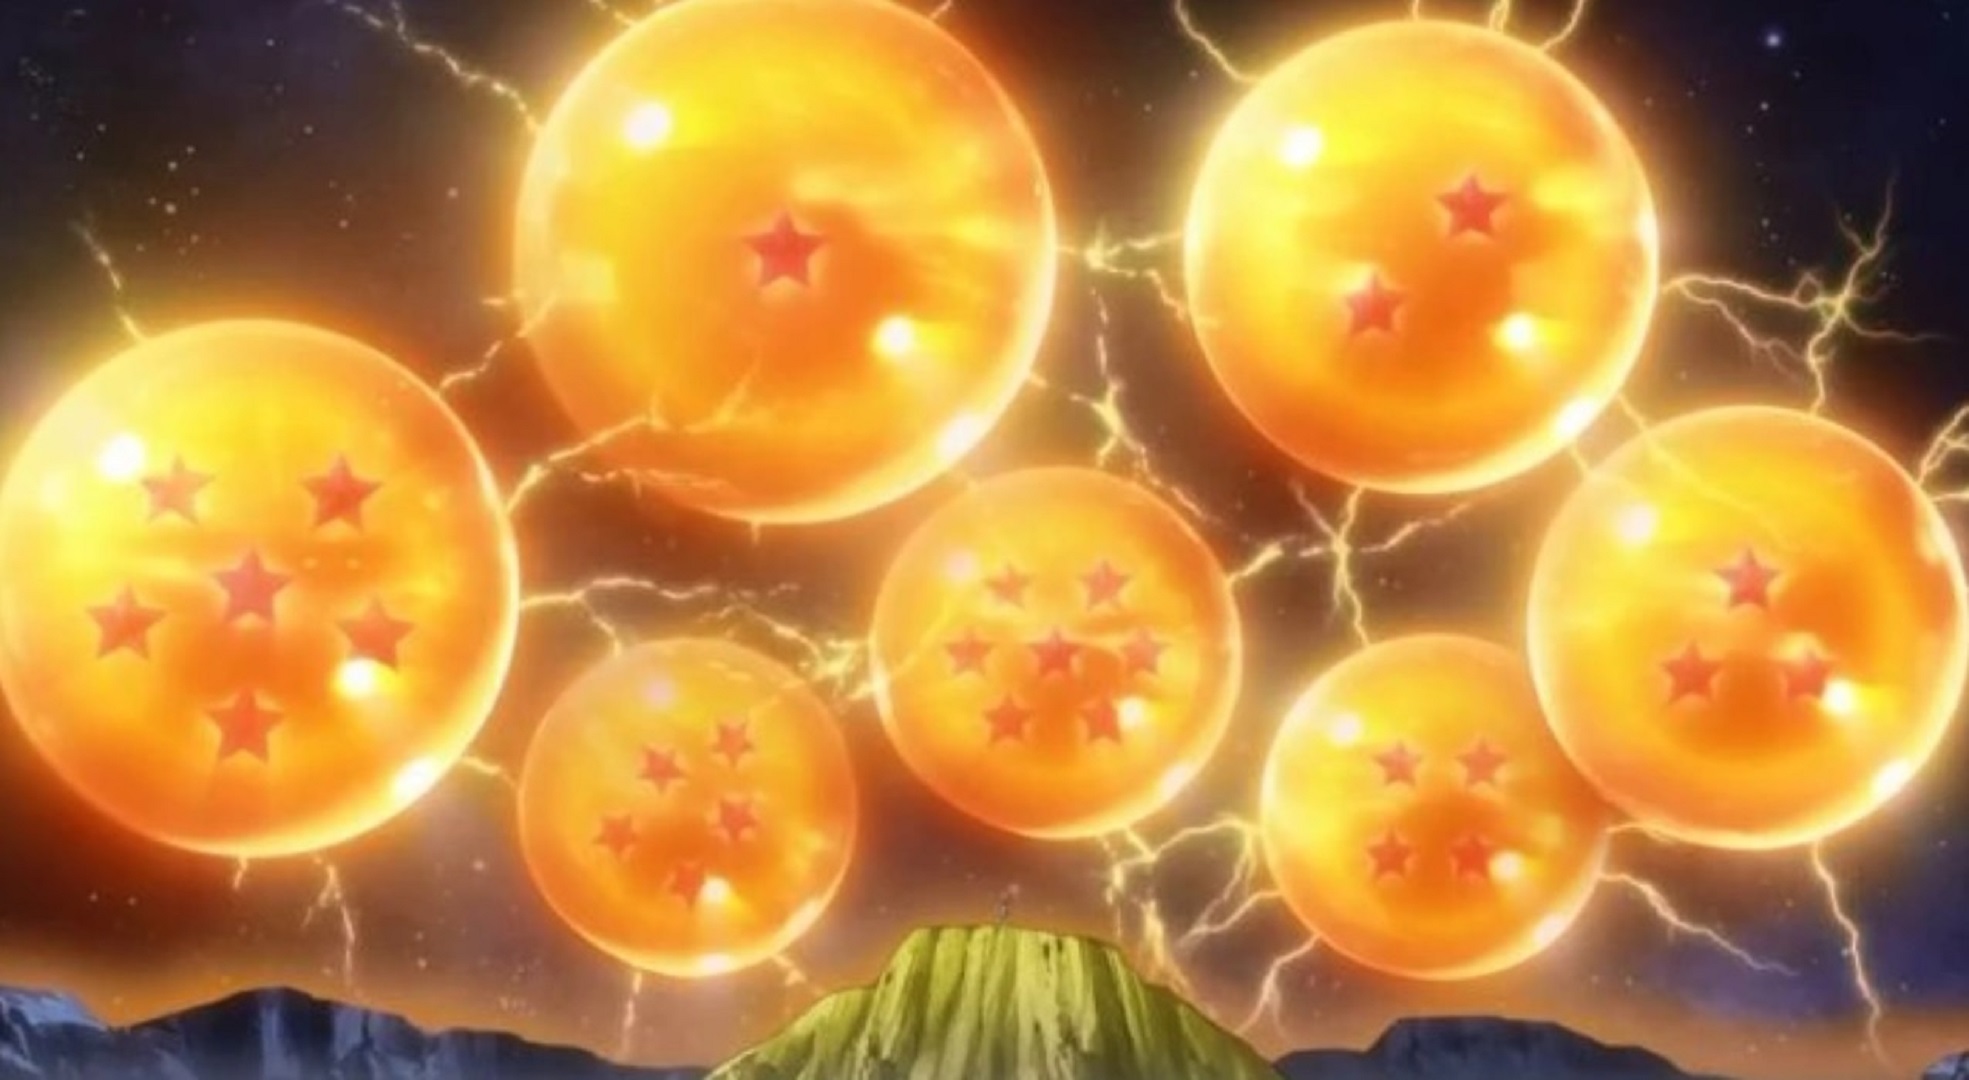 Dragon Ball - Conquistar As Esferas do Dragão - Ouvir Música